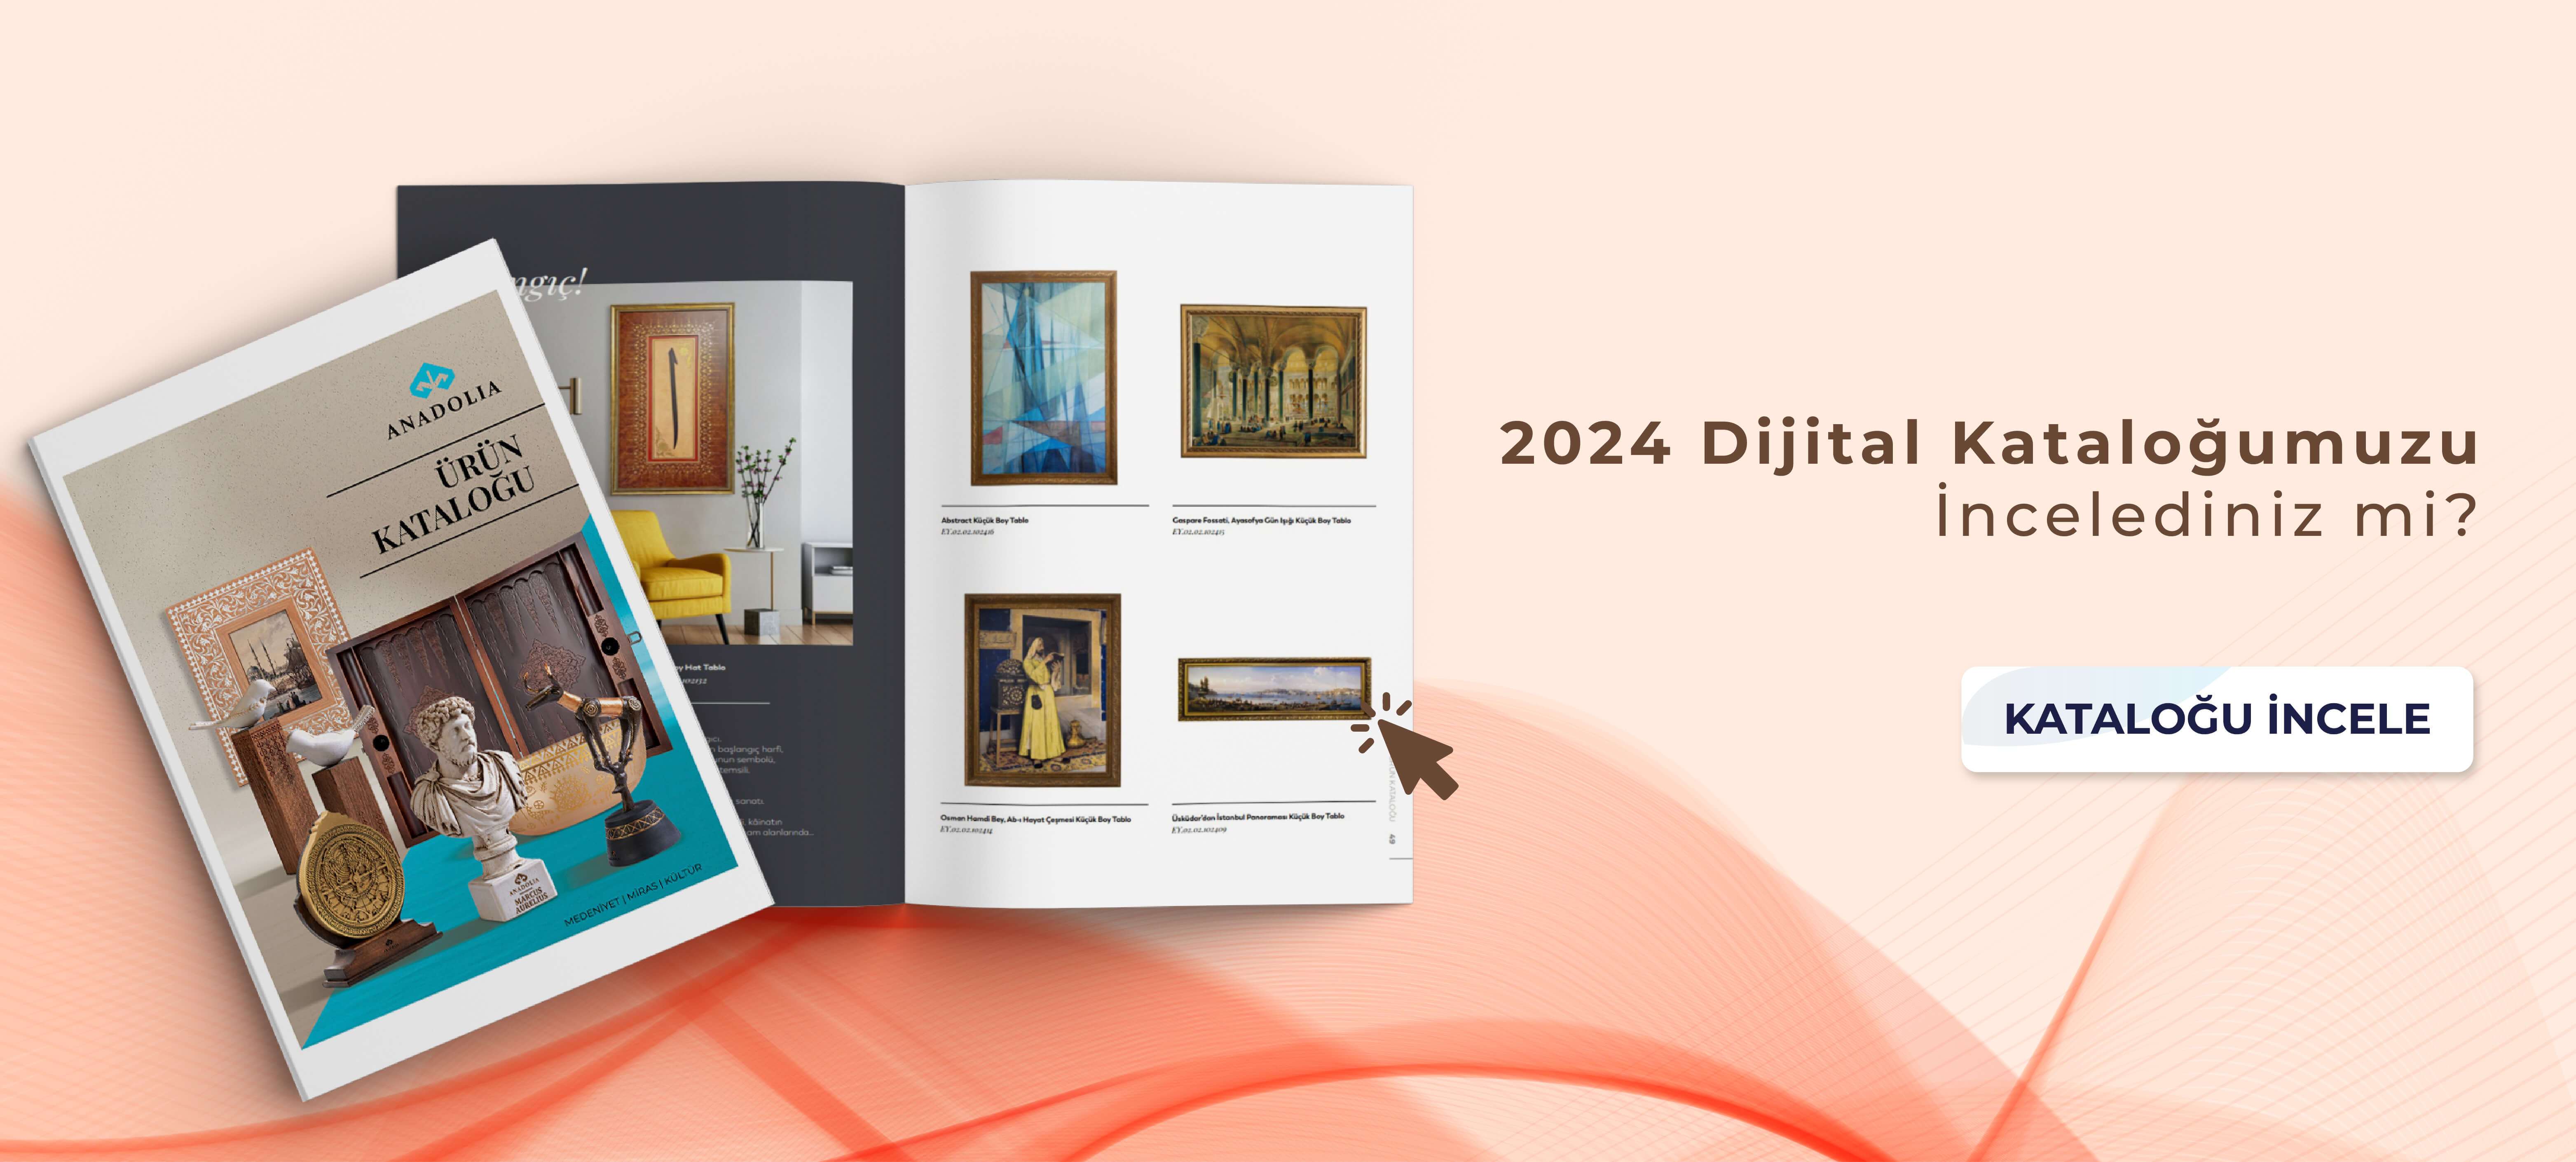 2024 Dijital Katalogumuzu İncelediniz mi?